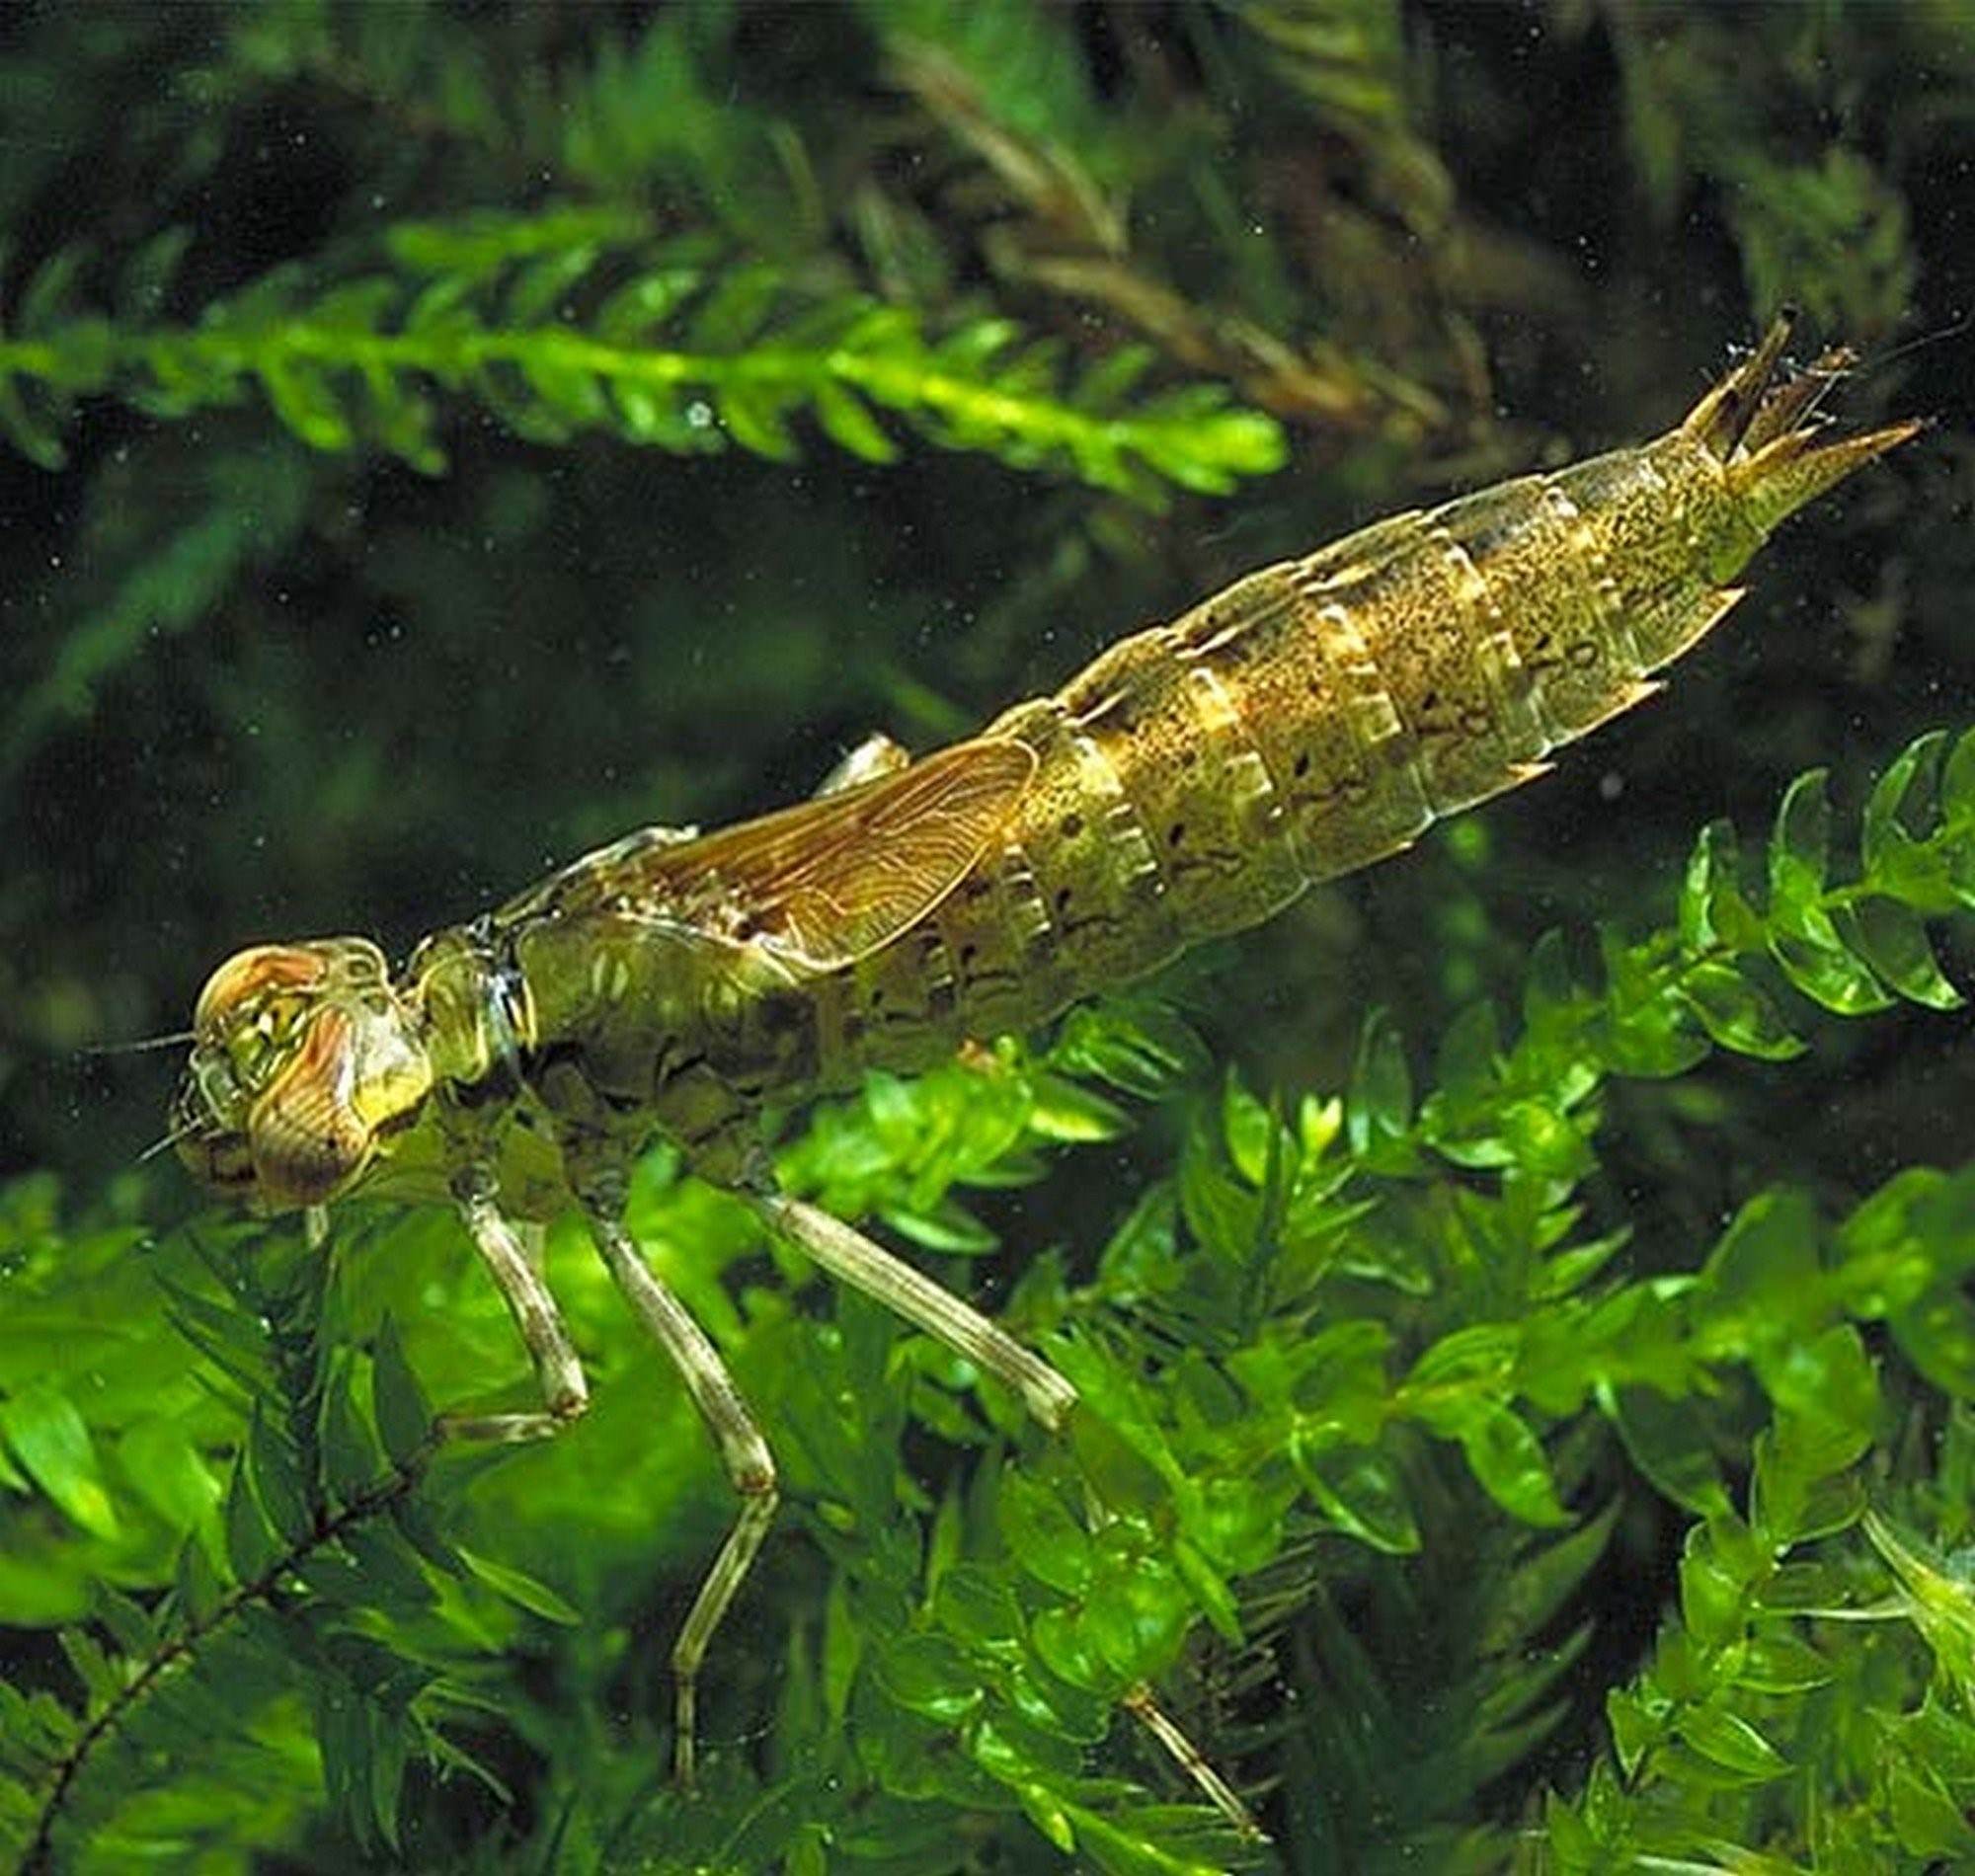 Личинка стрекозы фото в воде как выглядит